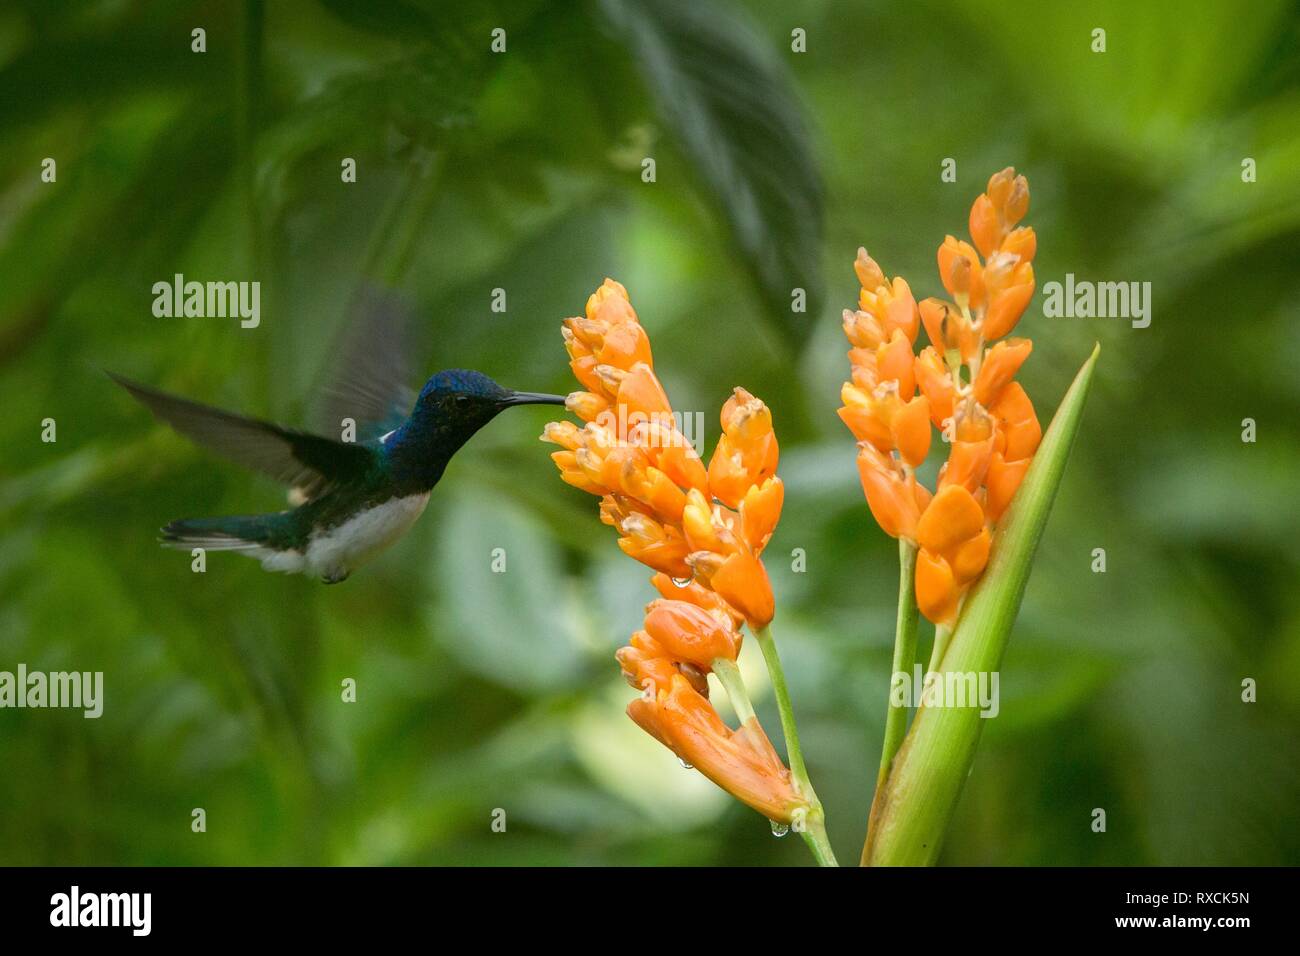 Hummingbird planant à côté de fleur orange,tropical forest,Equateur,bird sucer le nectar des fleurs dans le jardin d'oiseaux aux ailes déployées,nature,wild Banque D'Images